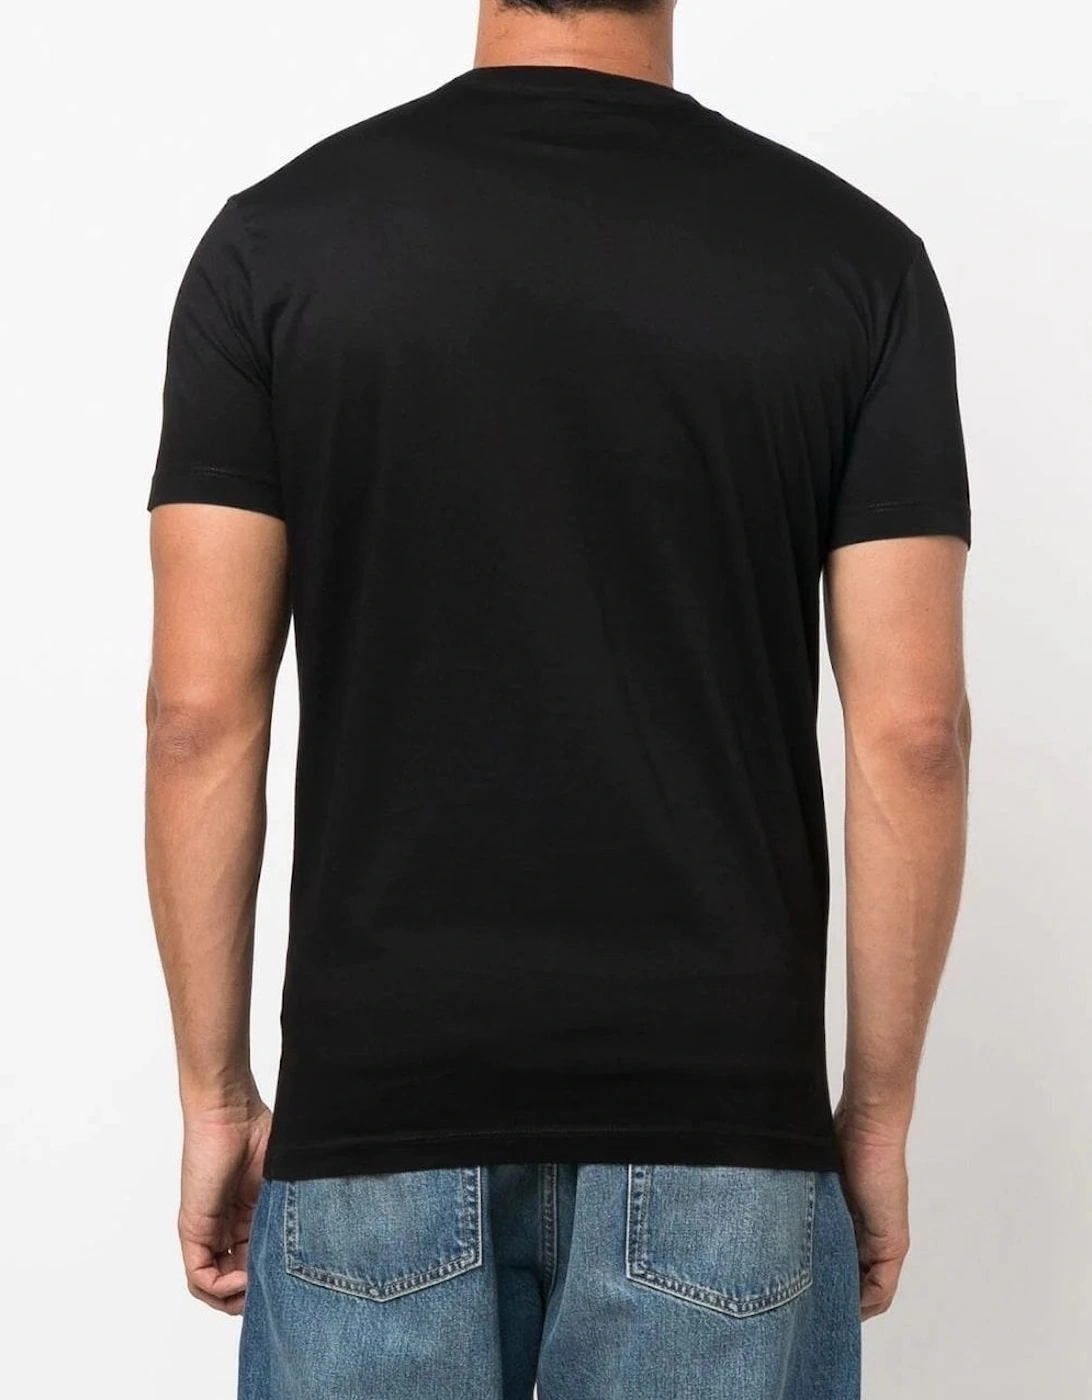 Cap Printed T-Shirt